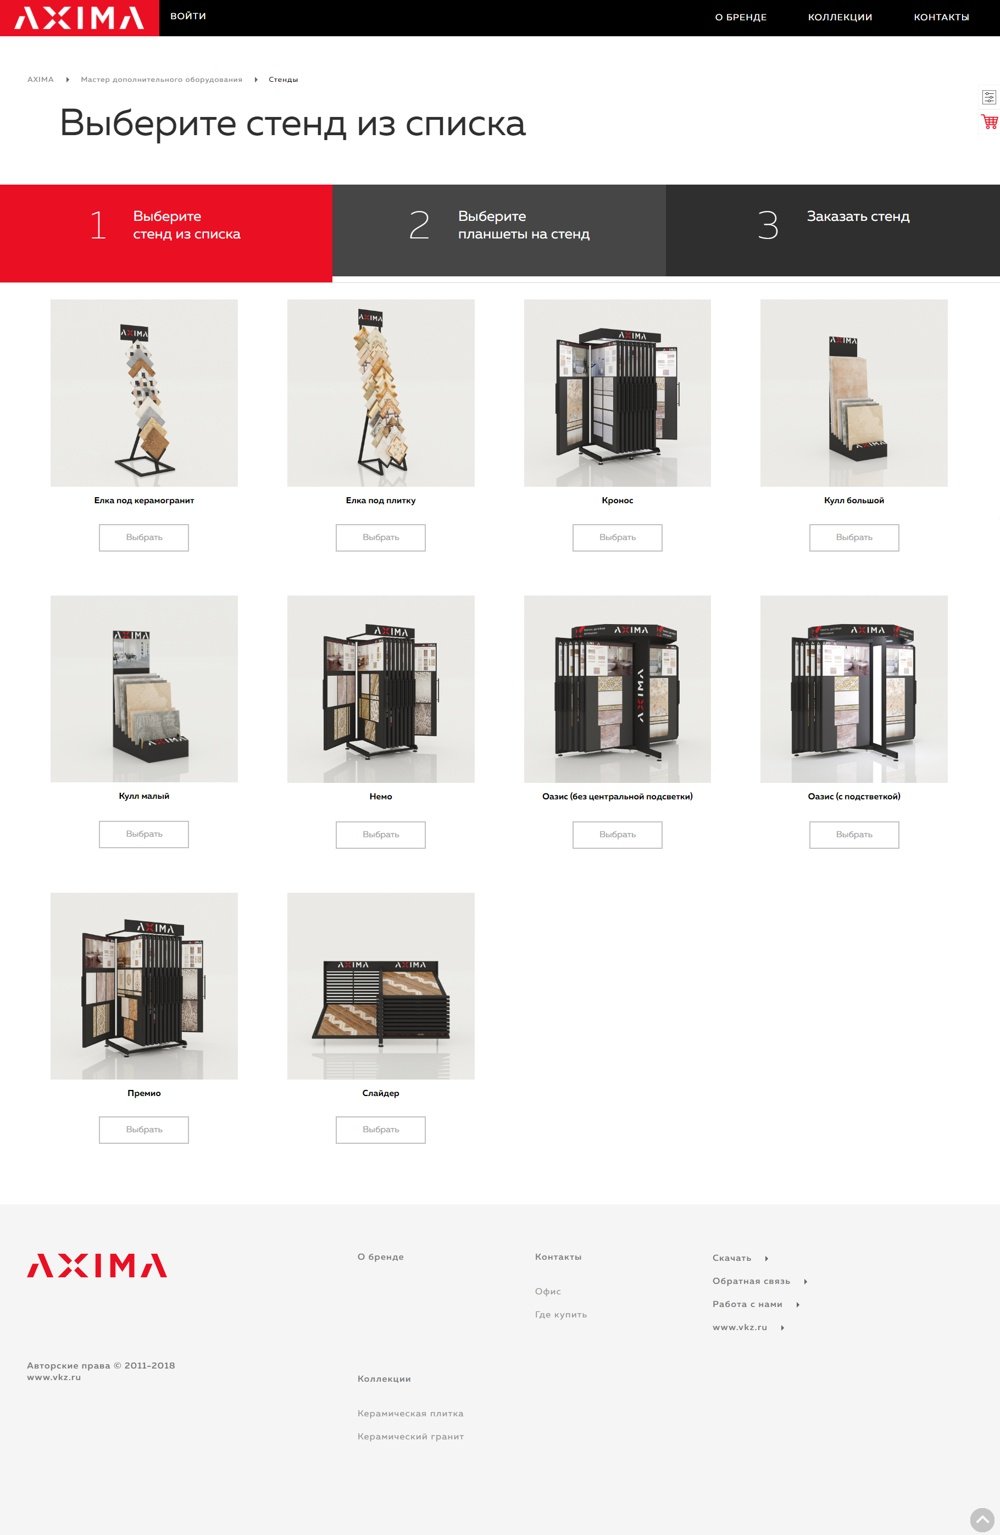 AXIMA-CERAMICA - производитель премиальной керамической плитки